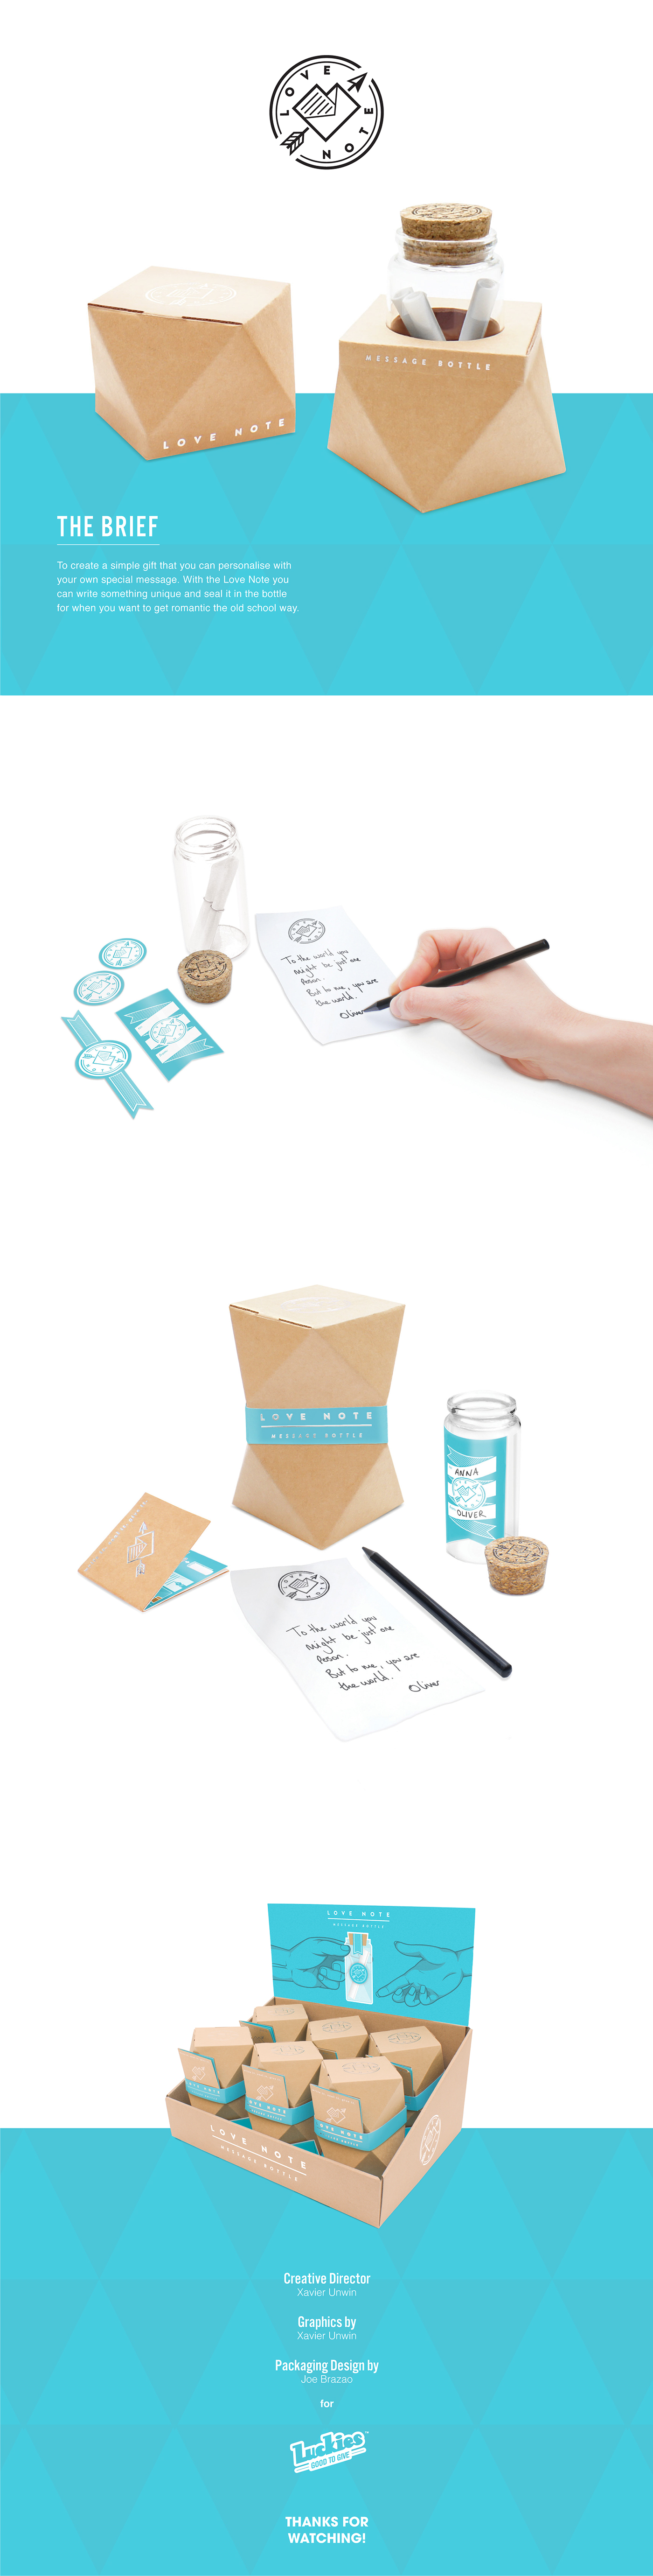 Packaging Pack Love note send gift geometric